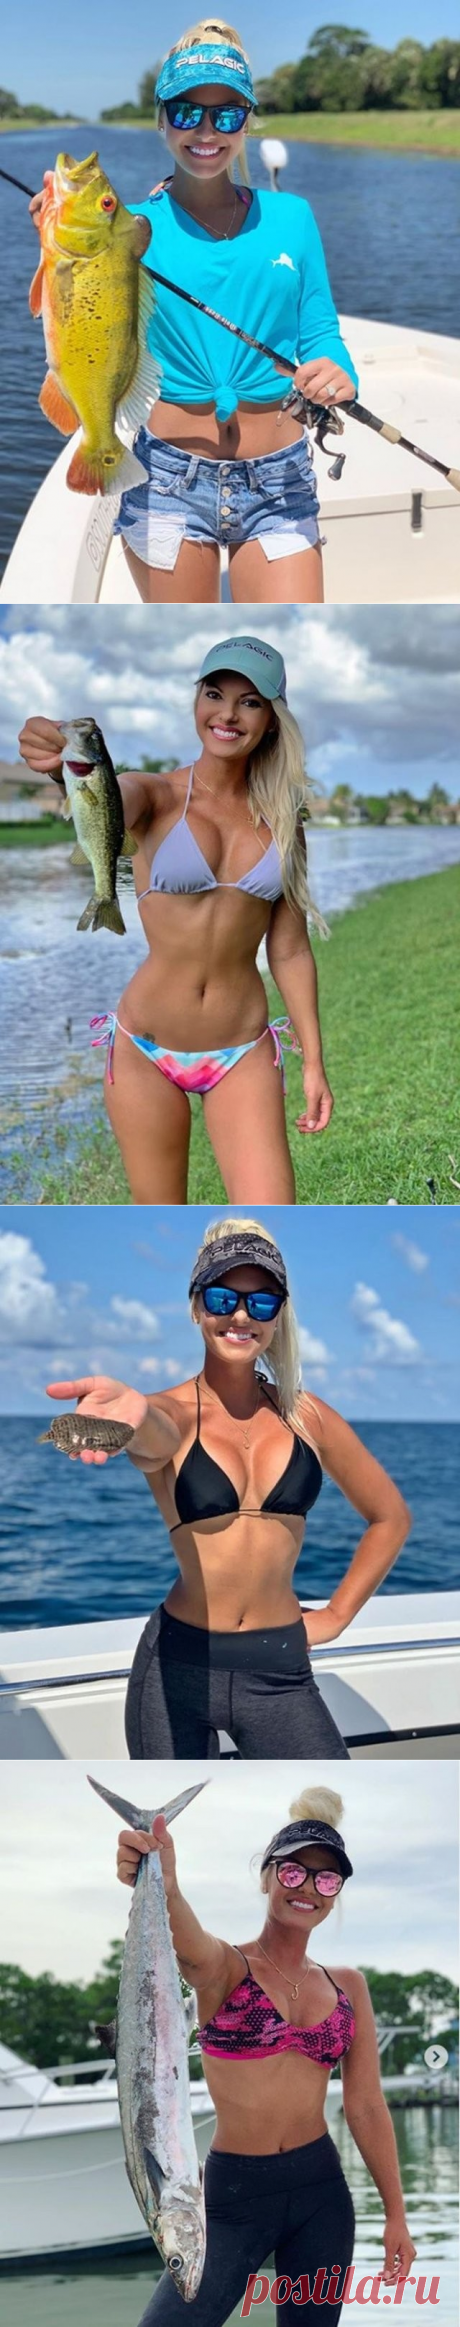 Мишель Дальтон девушка которая на рыбалке переплюнет мужчину (15 фото) - 17 Июля 2020 - Дискотека